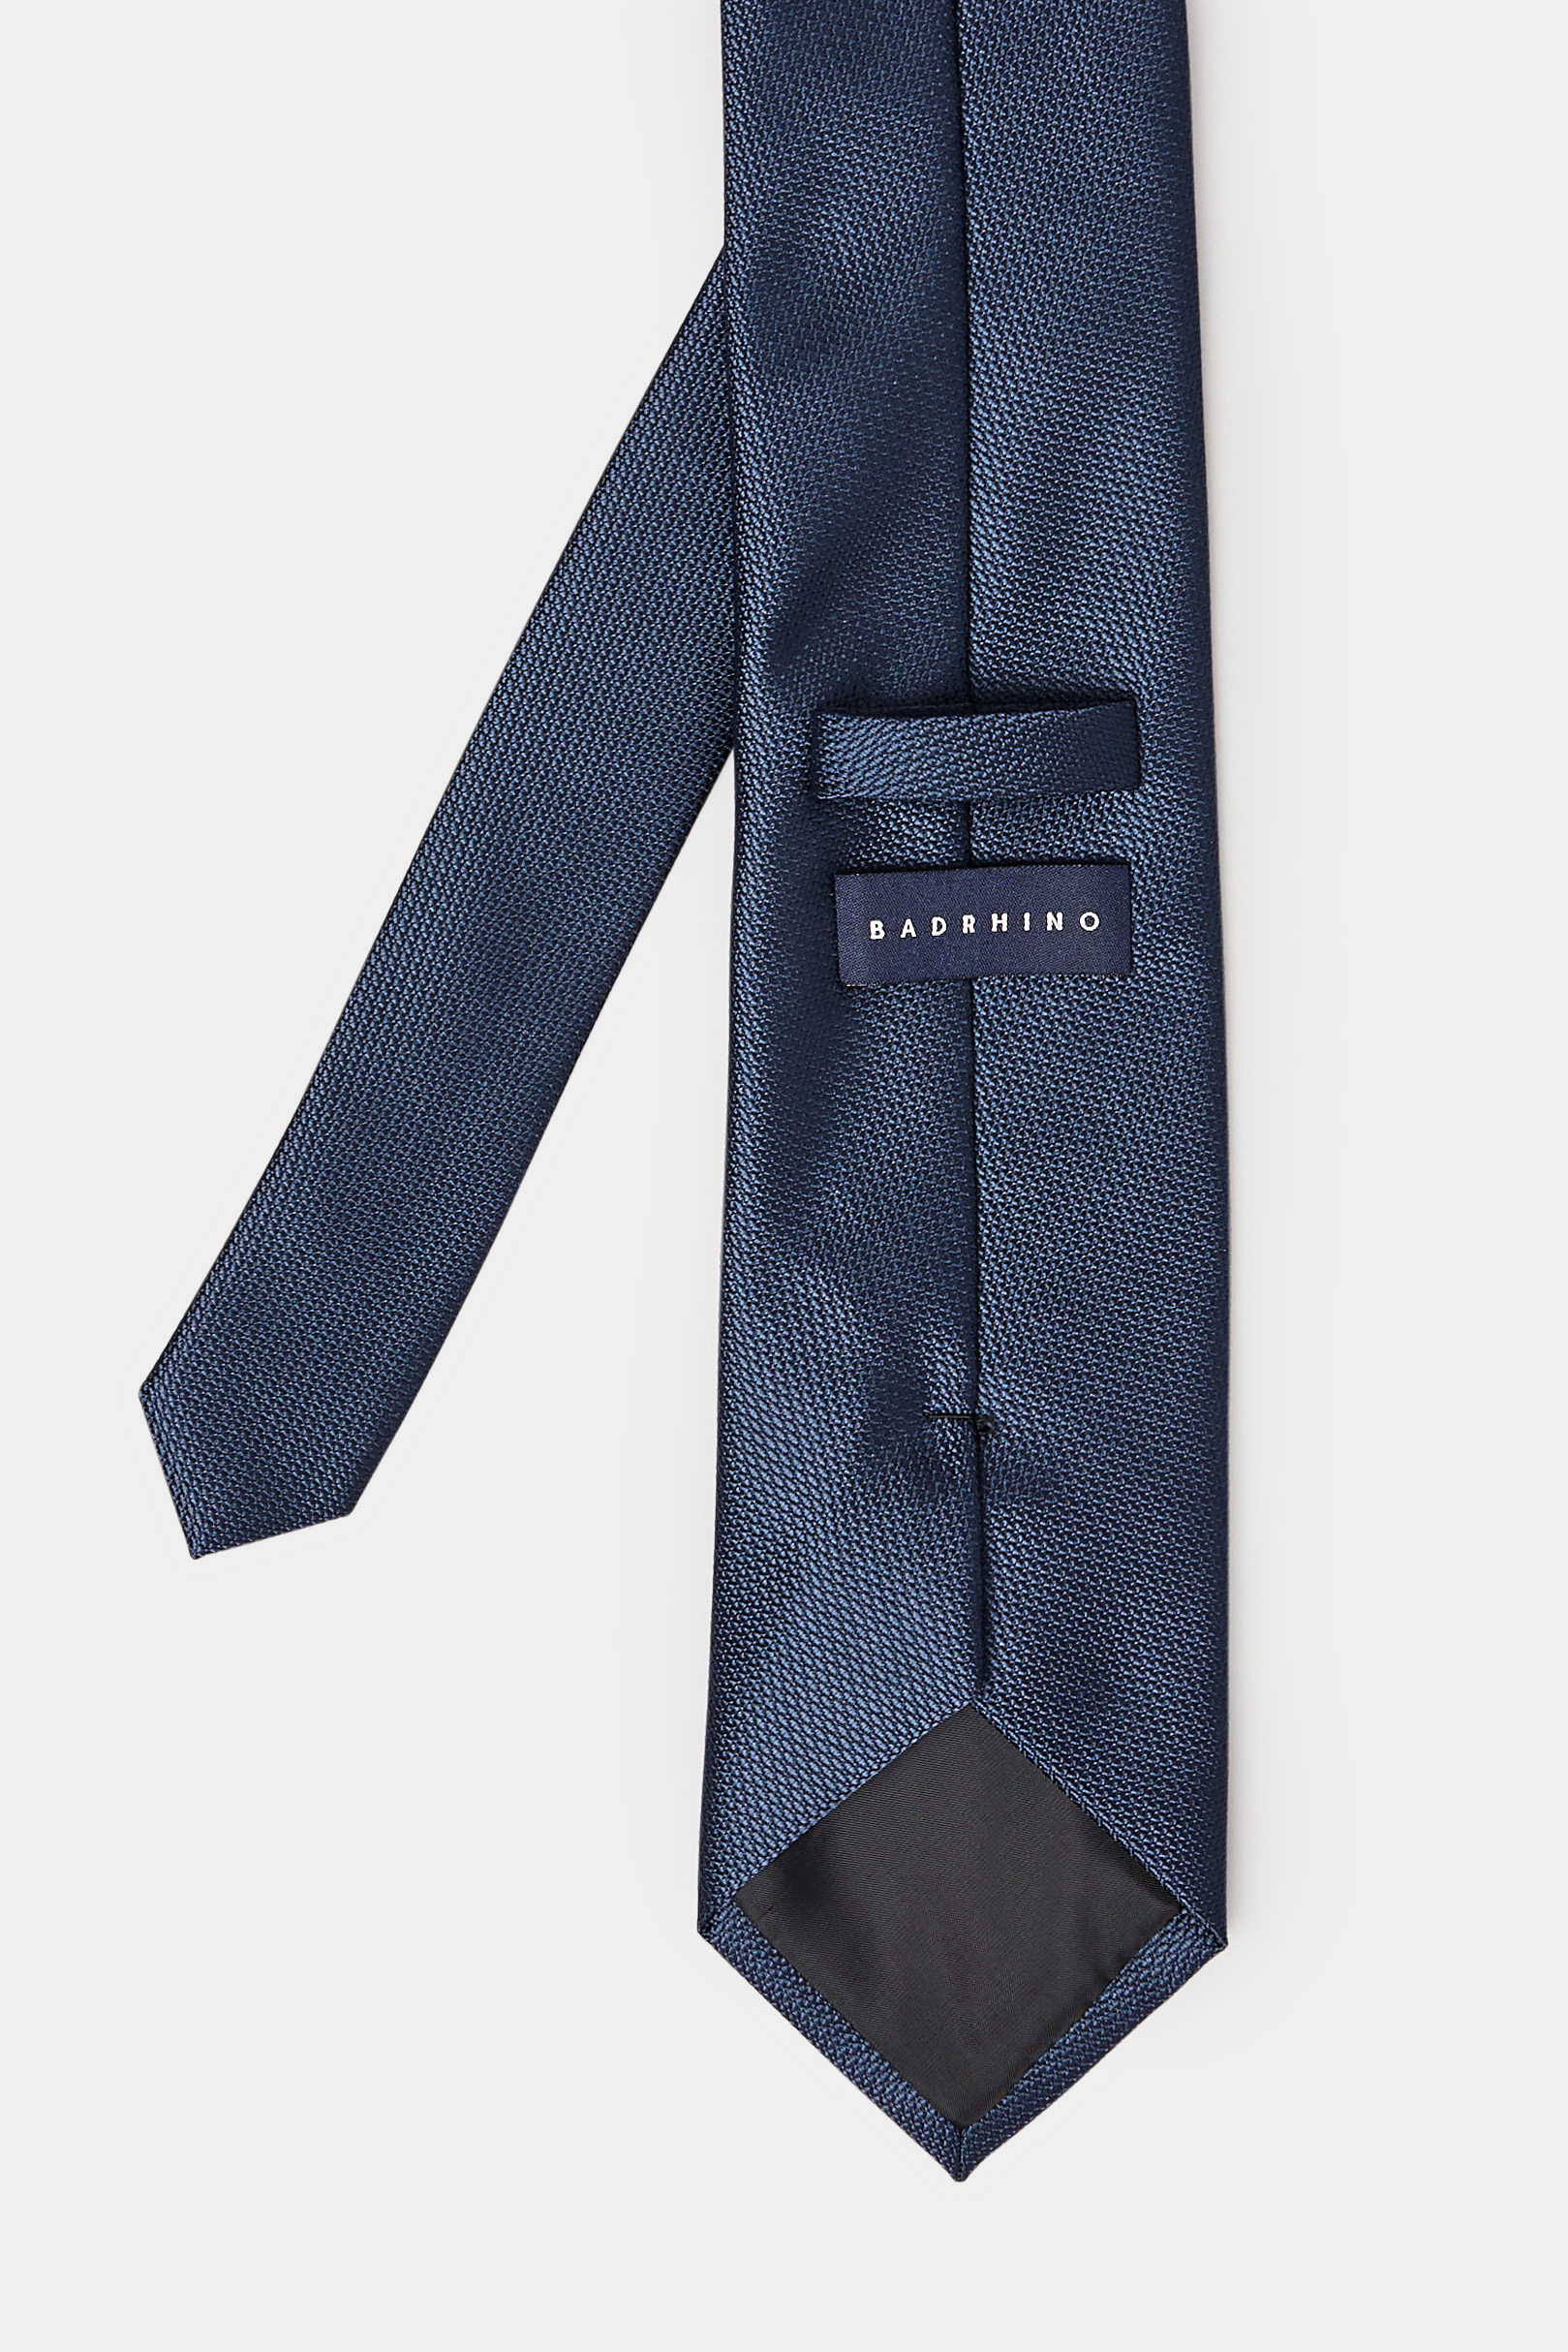 BadRhino Navy Blue Plain Textured Tie | BadRhino 3